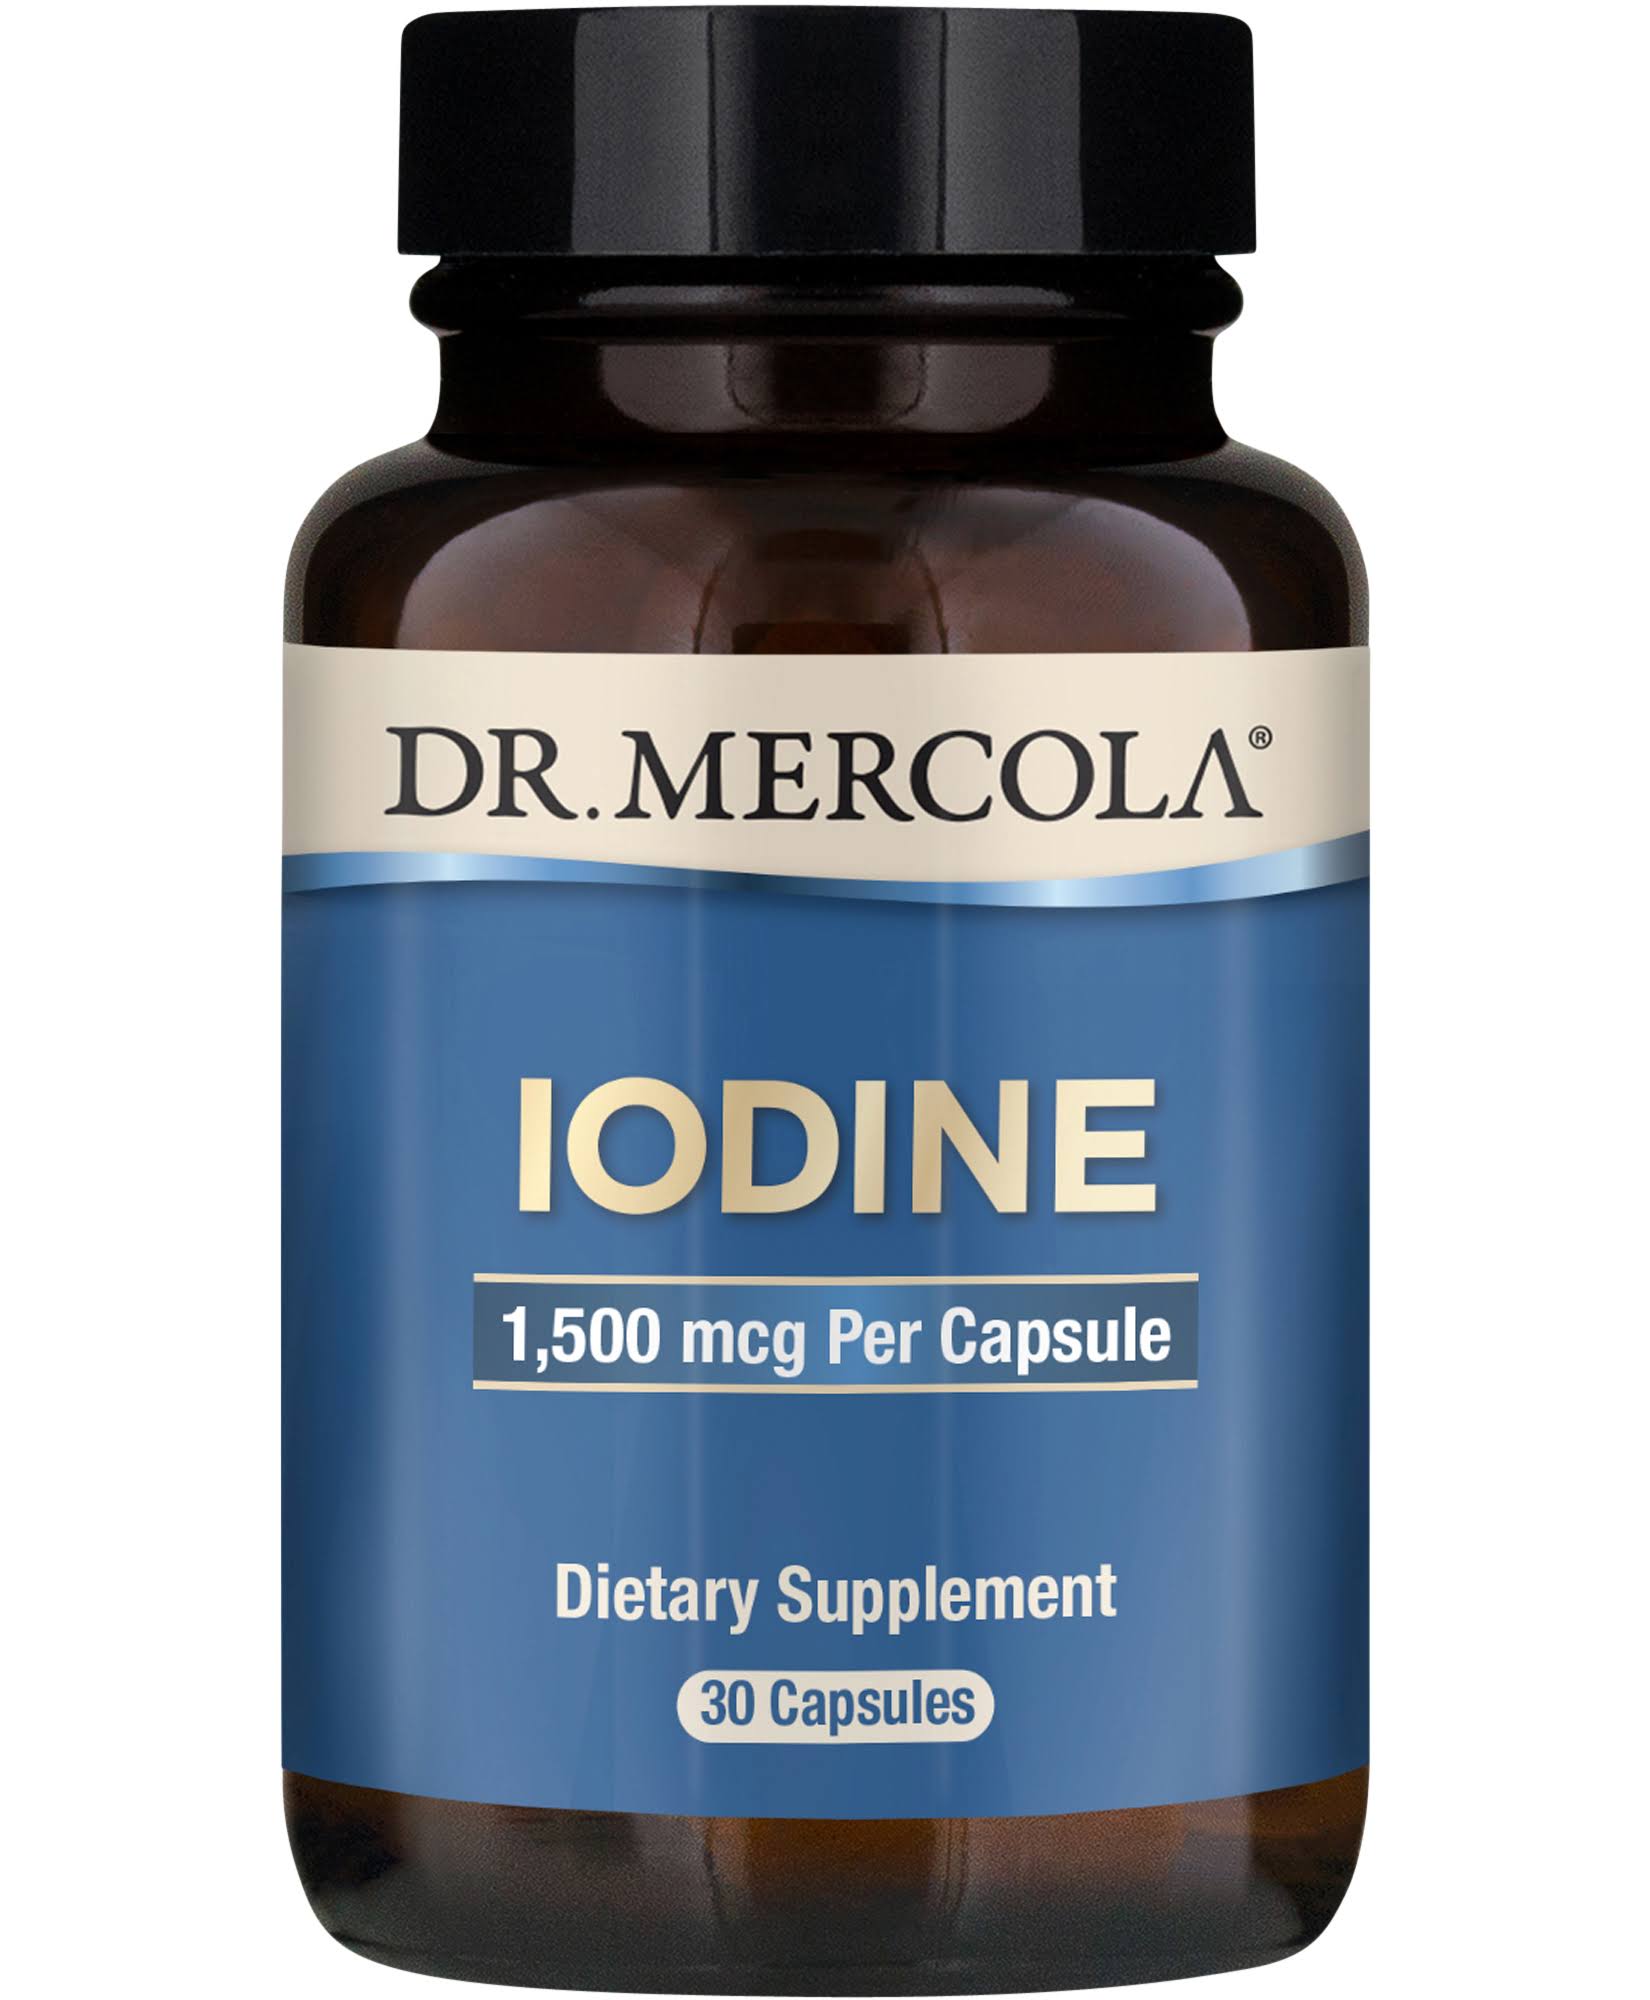 Dr. Mercola Iodine Capsules - x30